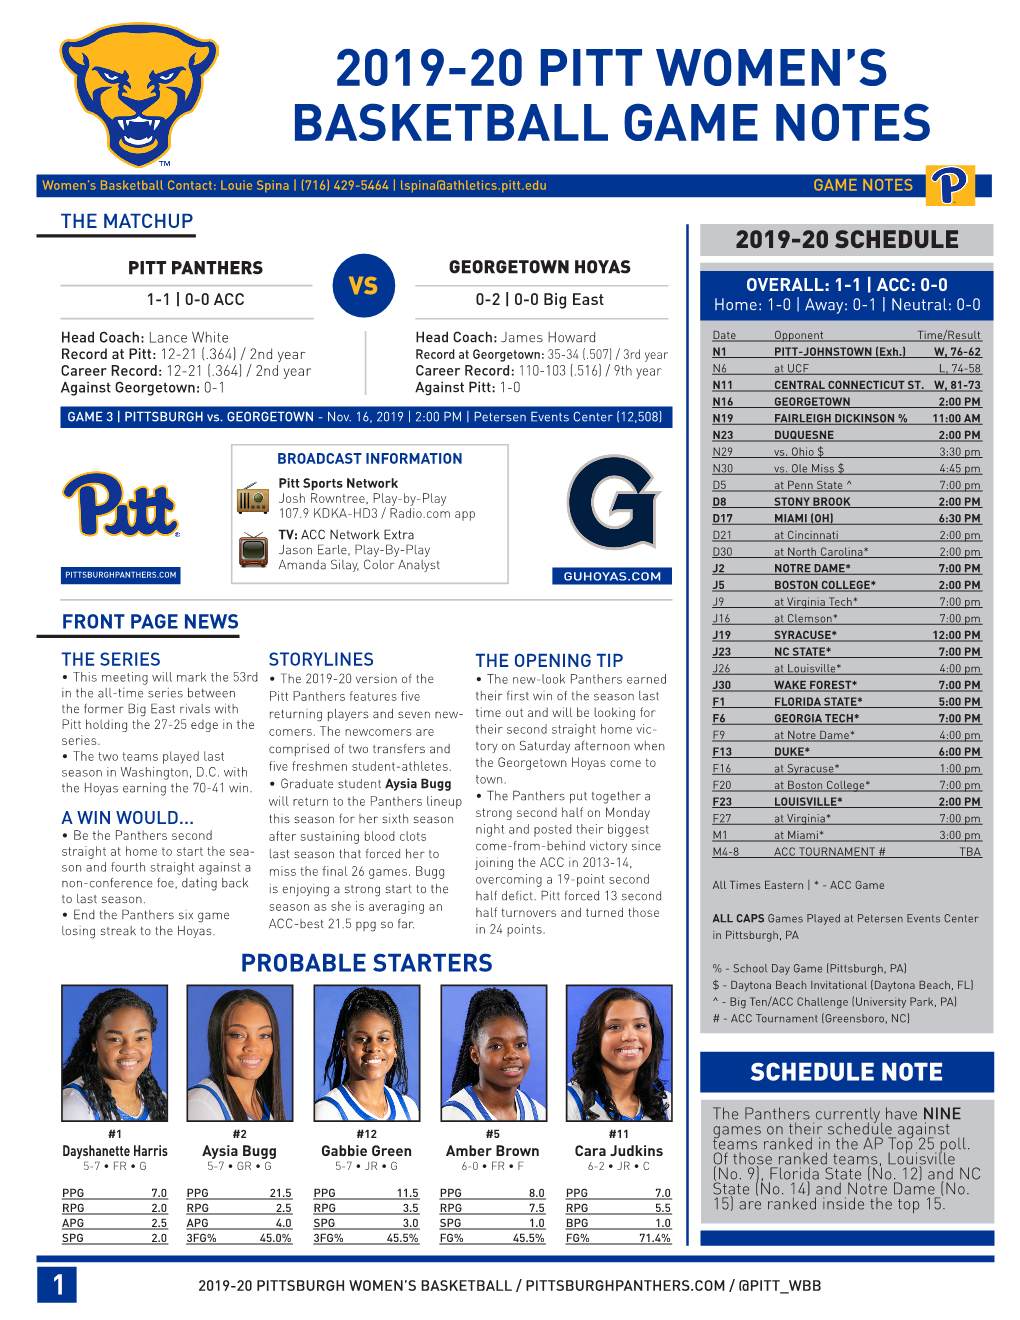 2019-20 Pitt Women's Basketball Game Notes